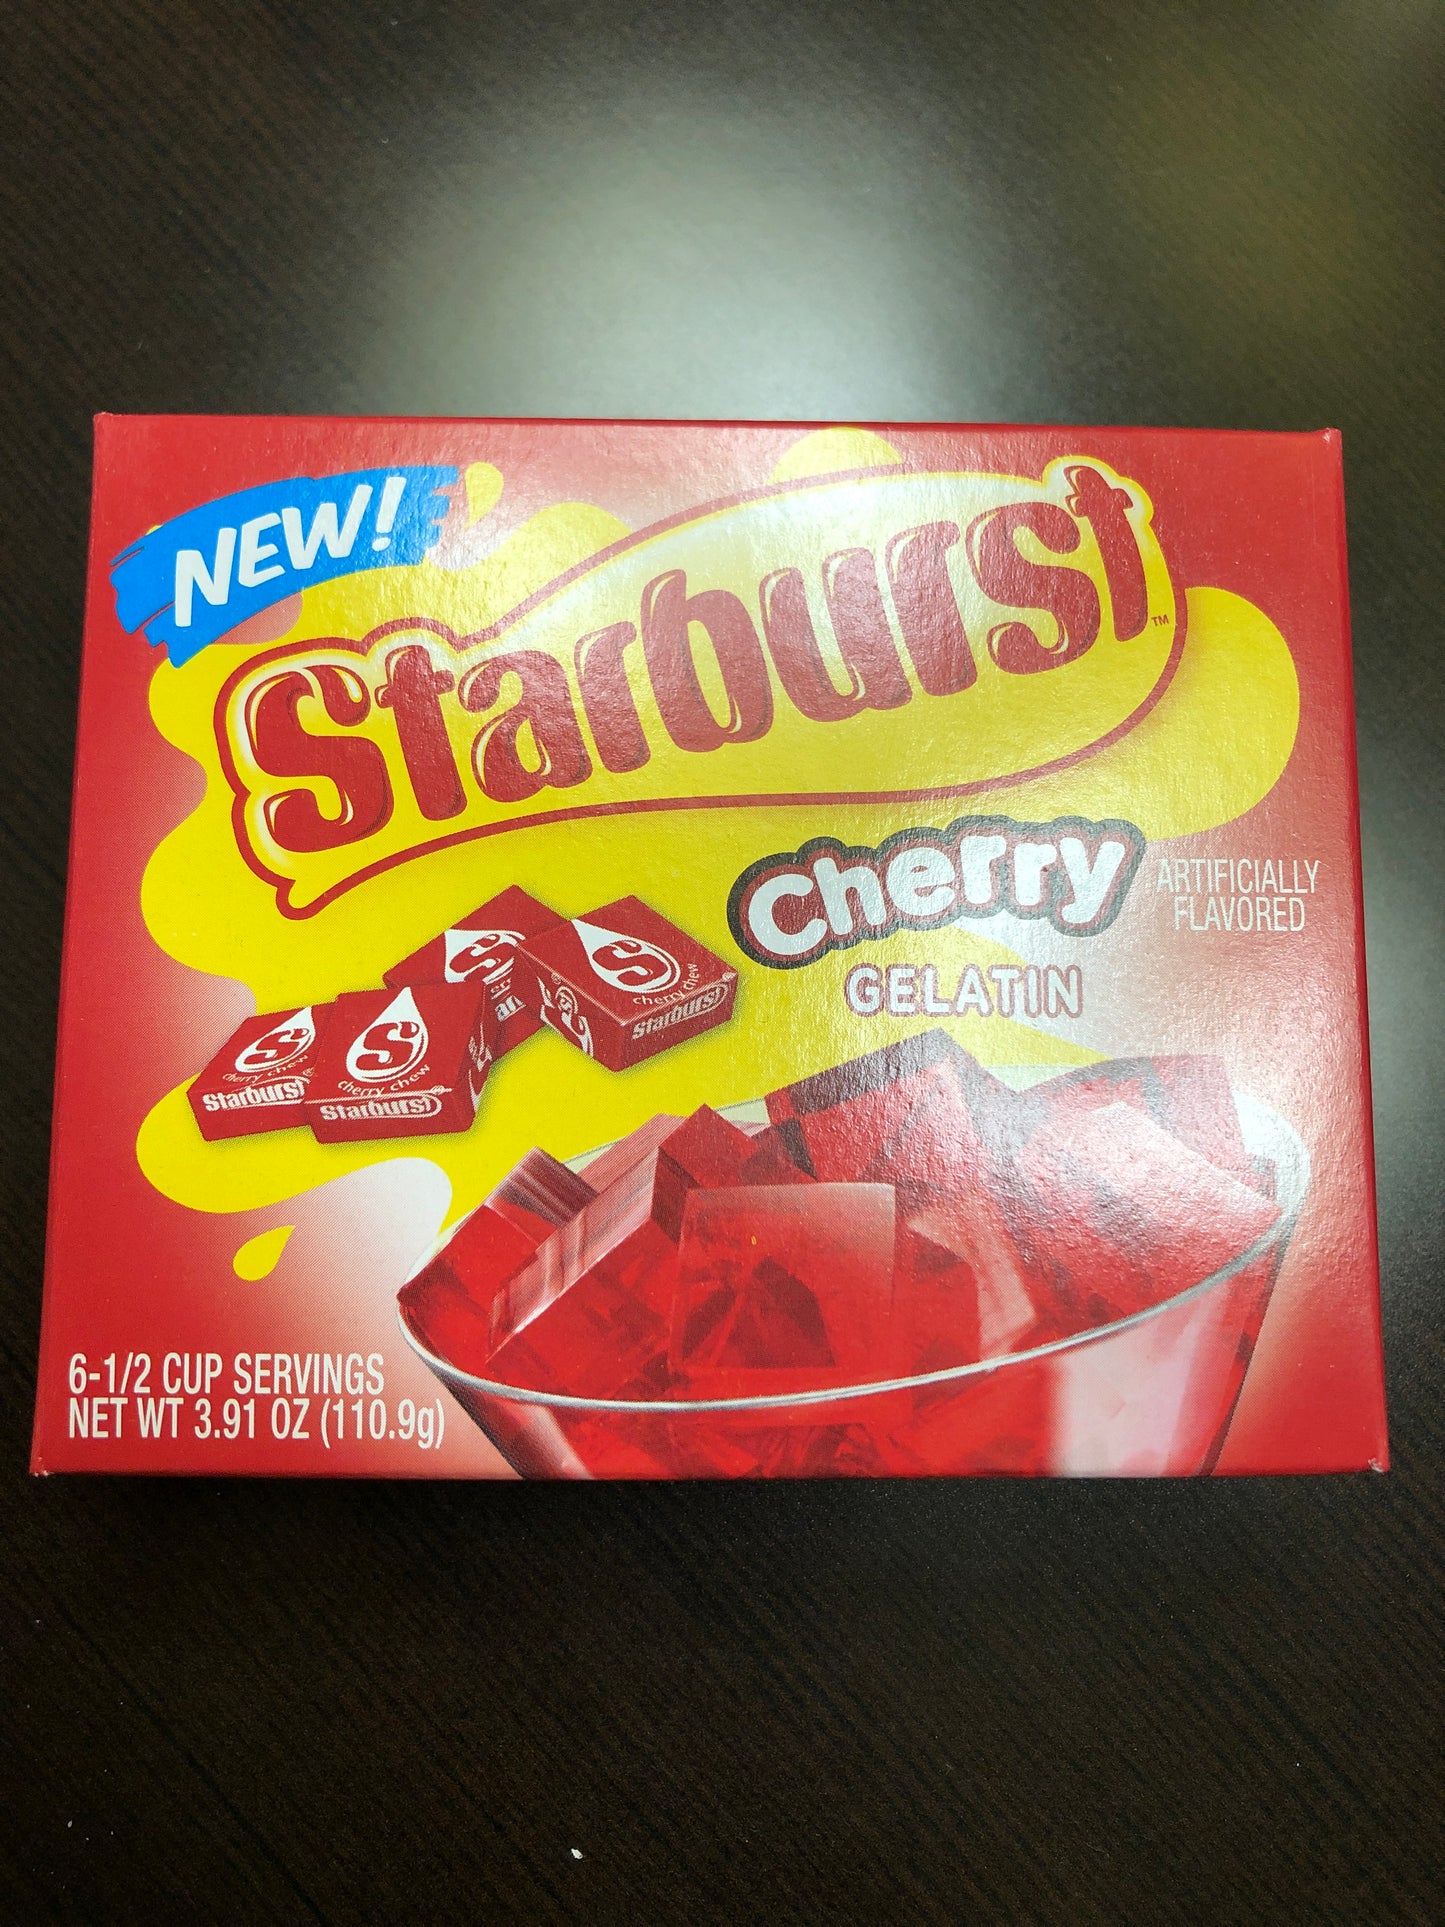 Starburst Cherry Gelatin